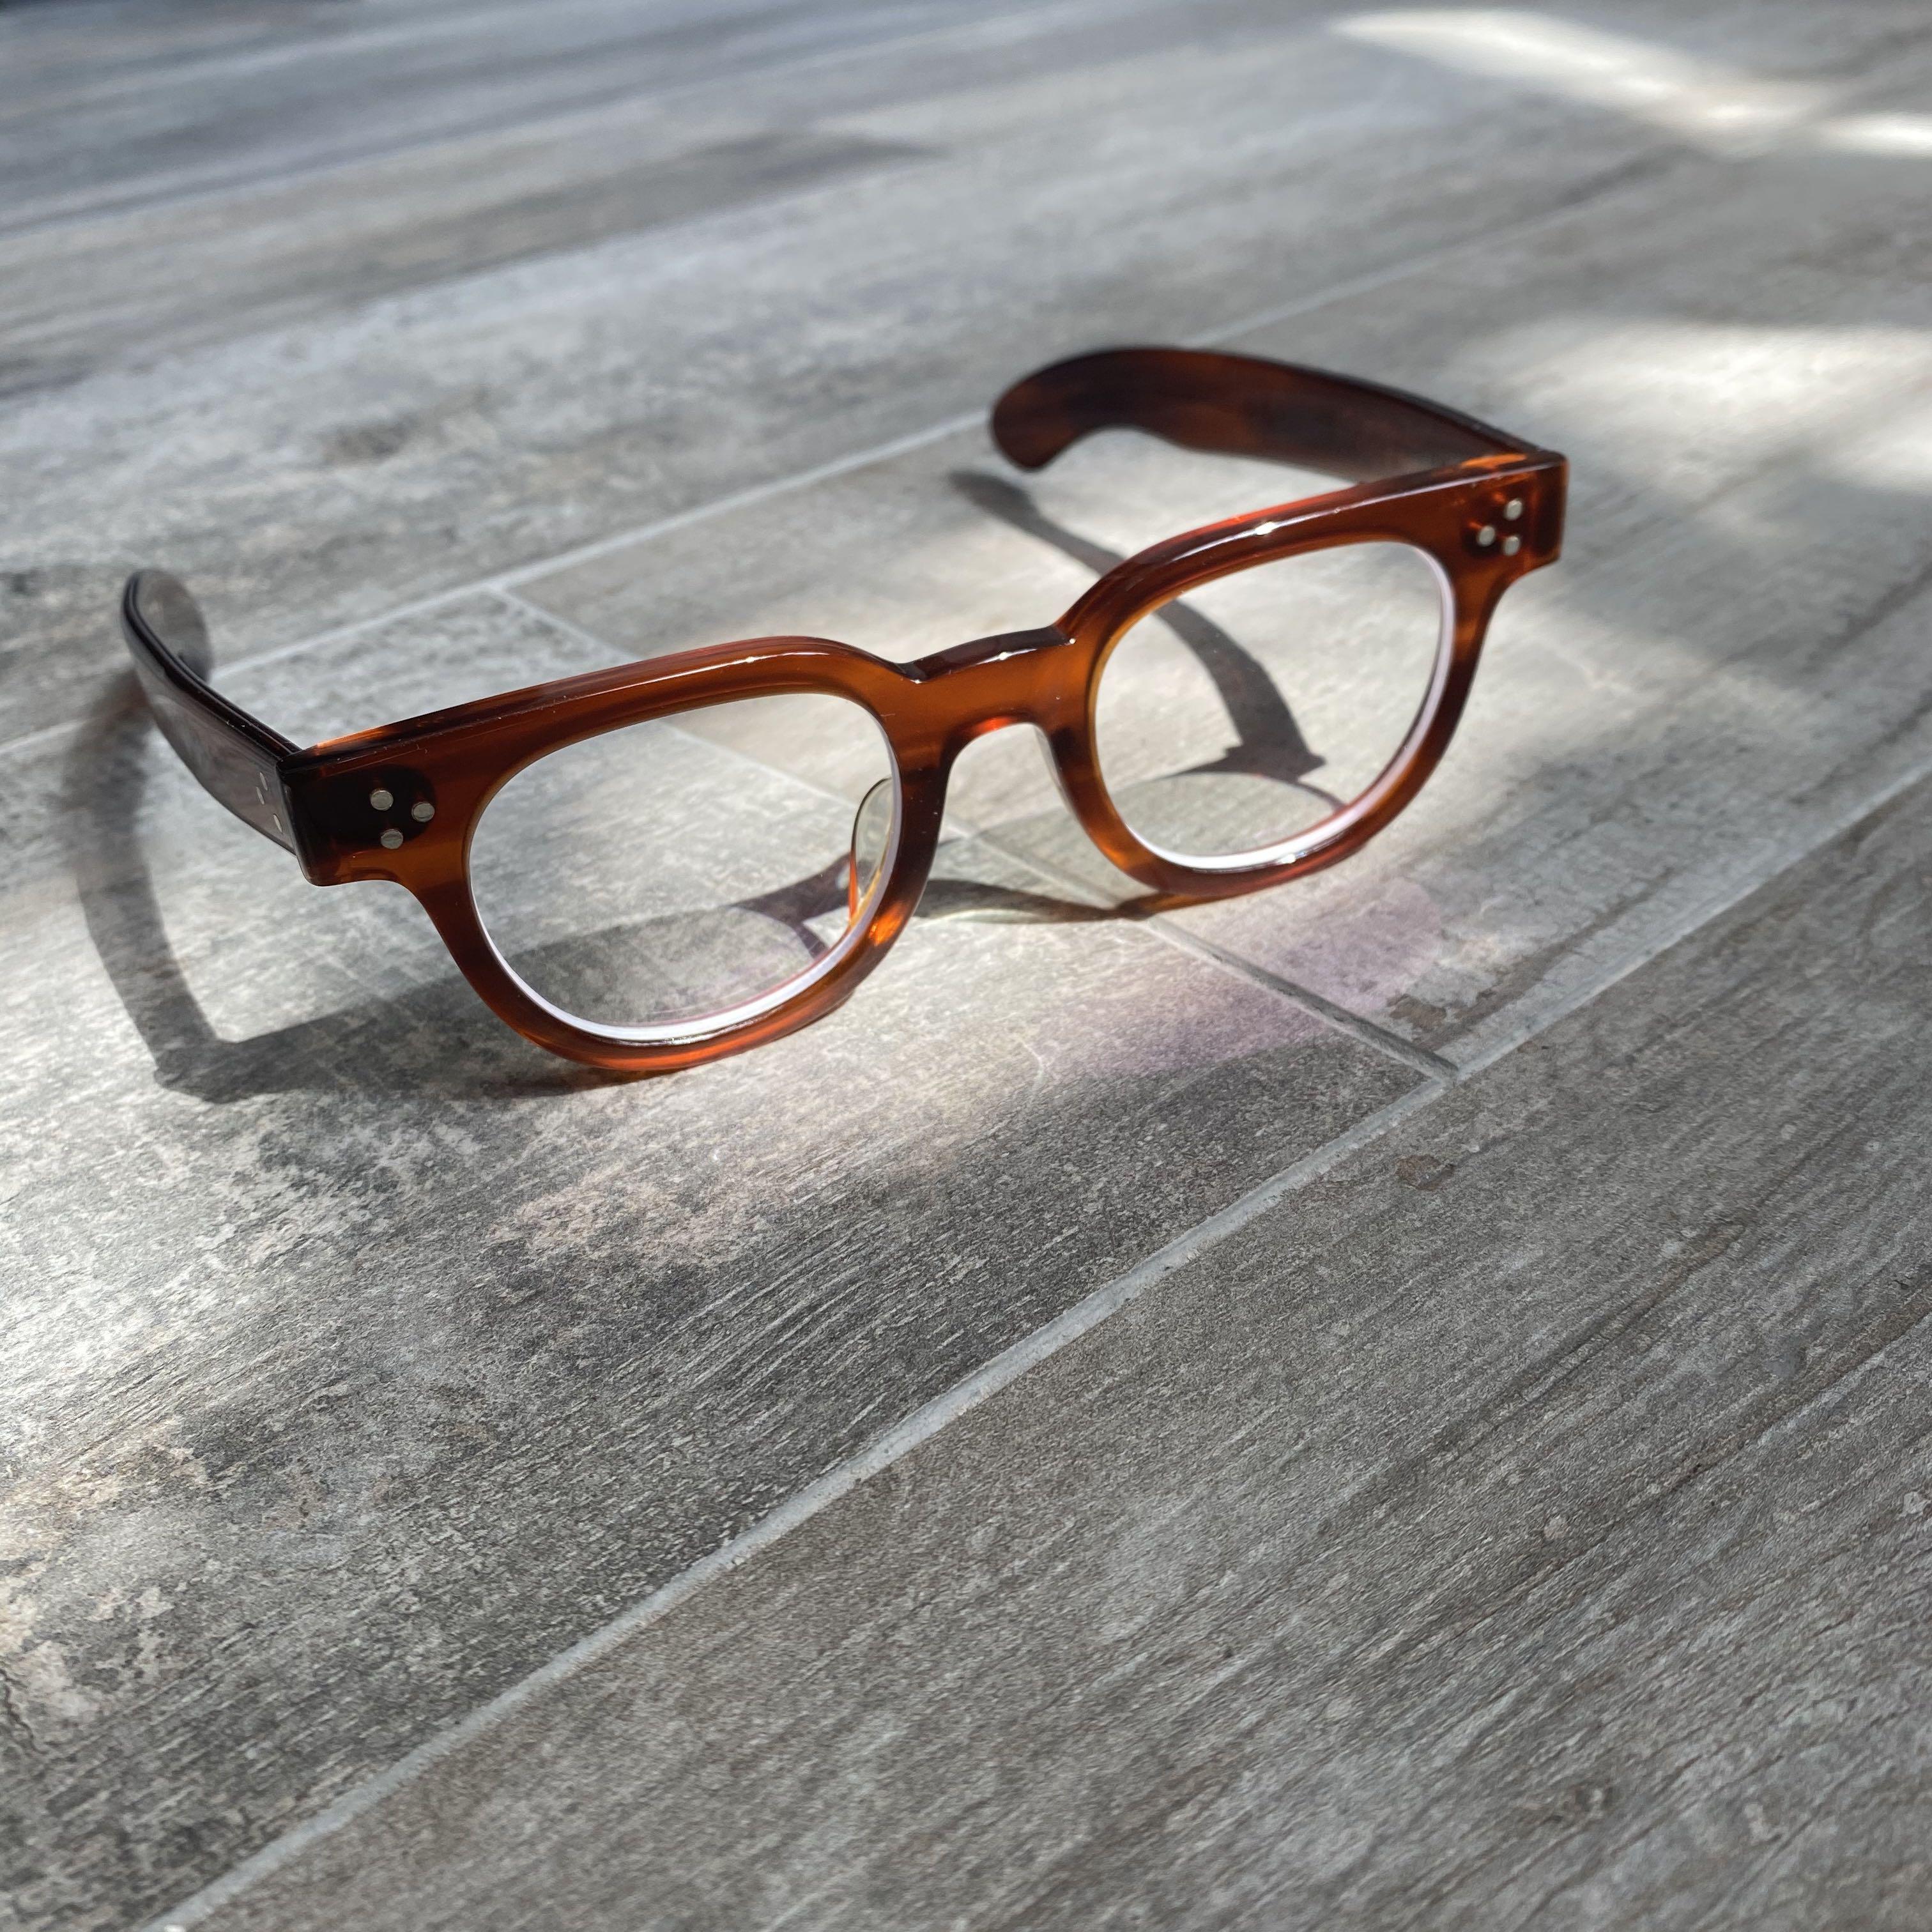 Julius Tart Optical FDR Sunglasses Arnel Glasses Eyewear , 女裝